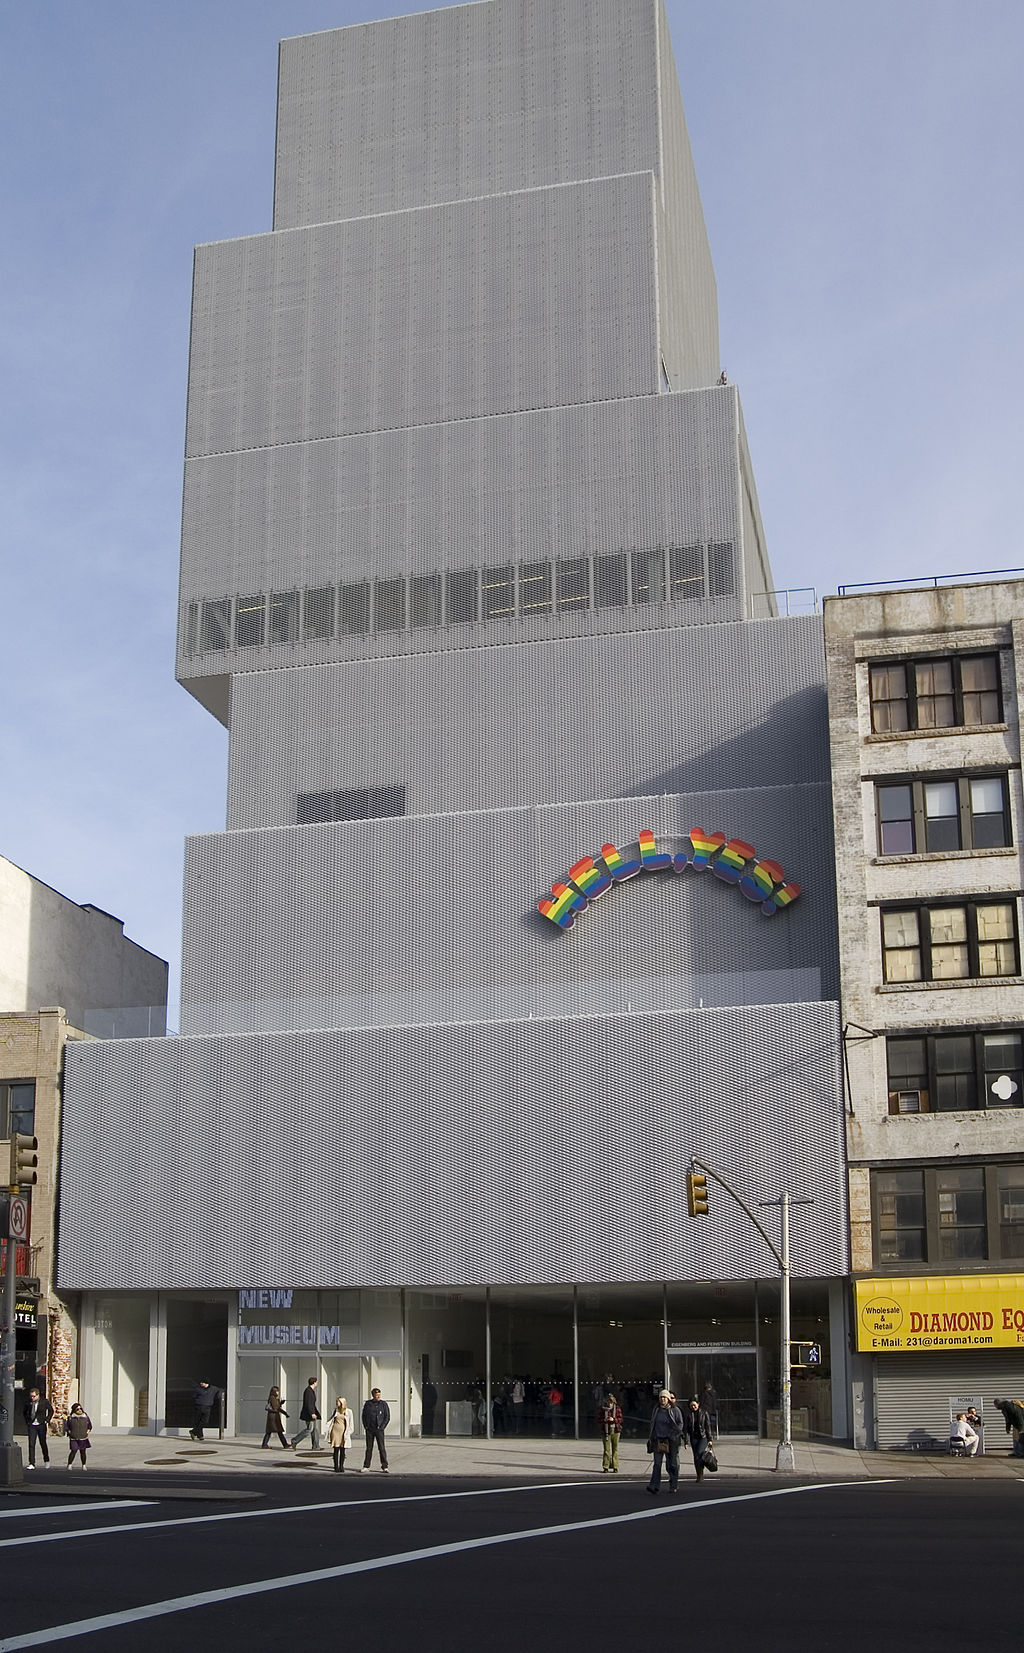 Il New Museum of Contemporary Art di New York, progettato dallo studio di architettura giapponese SANAA (Sejima and Nishizawa and Associates), 1977.